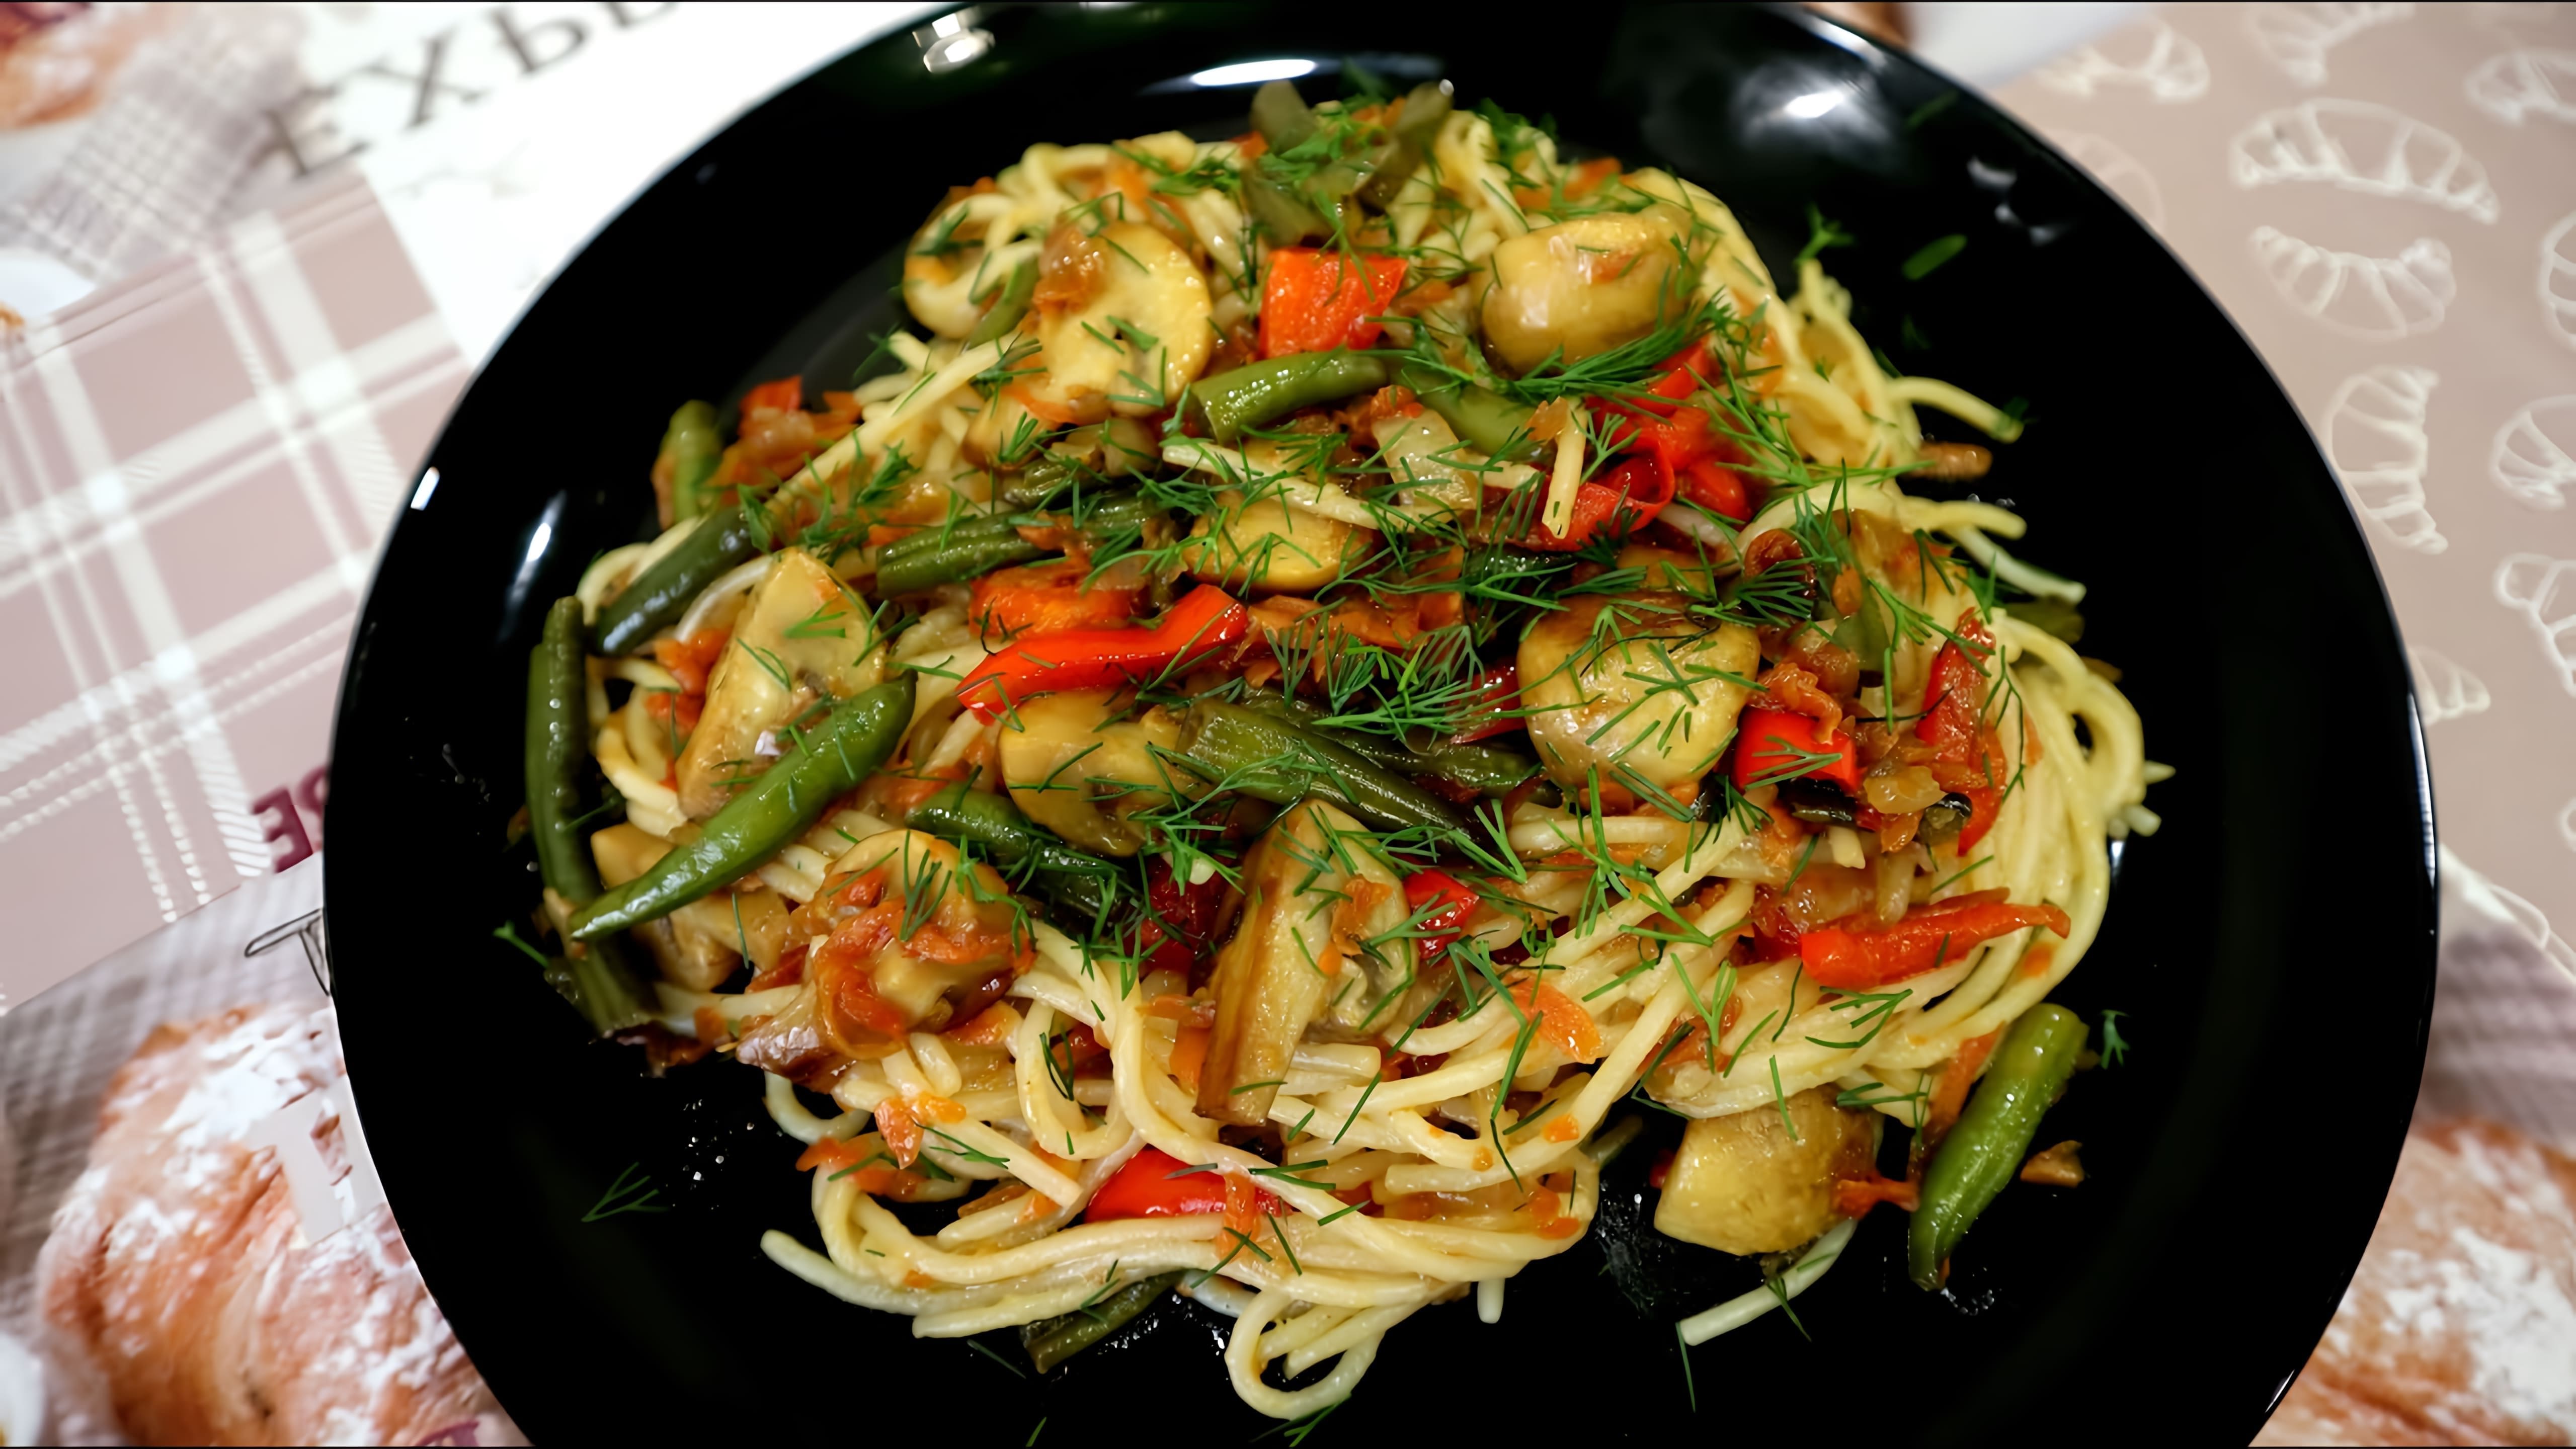 В этом видео демонстрируется процесс приготовления спагетти по-восточному с овощами и грибами